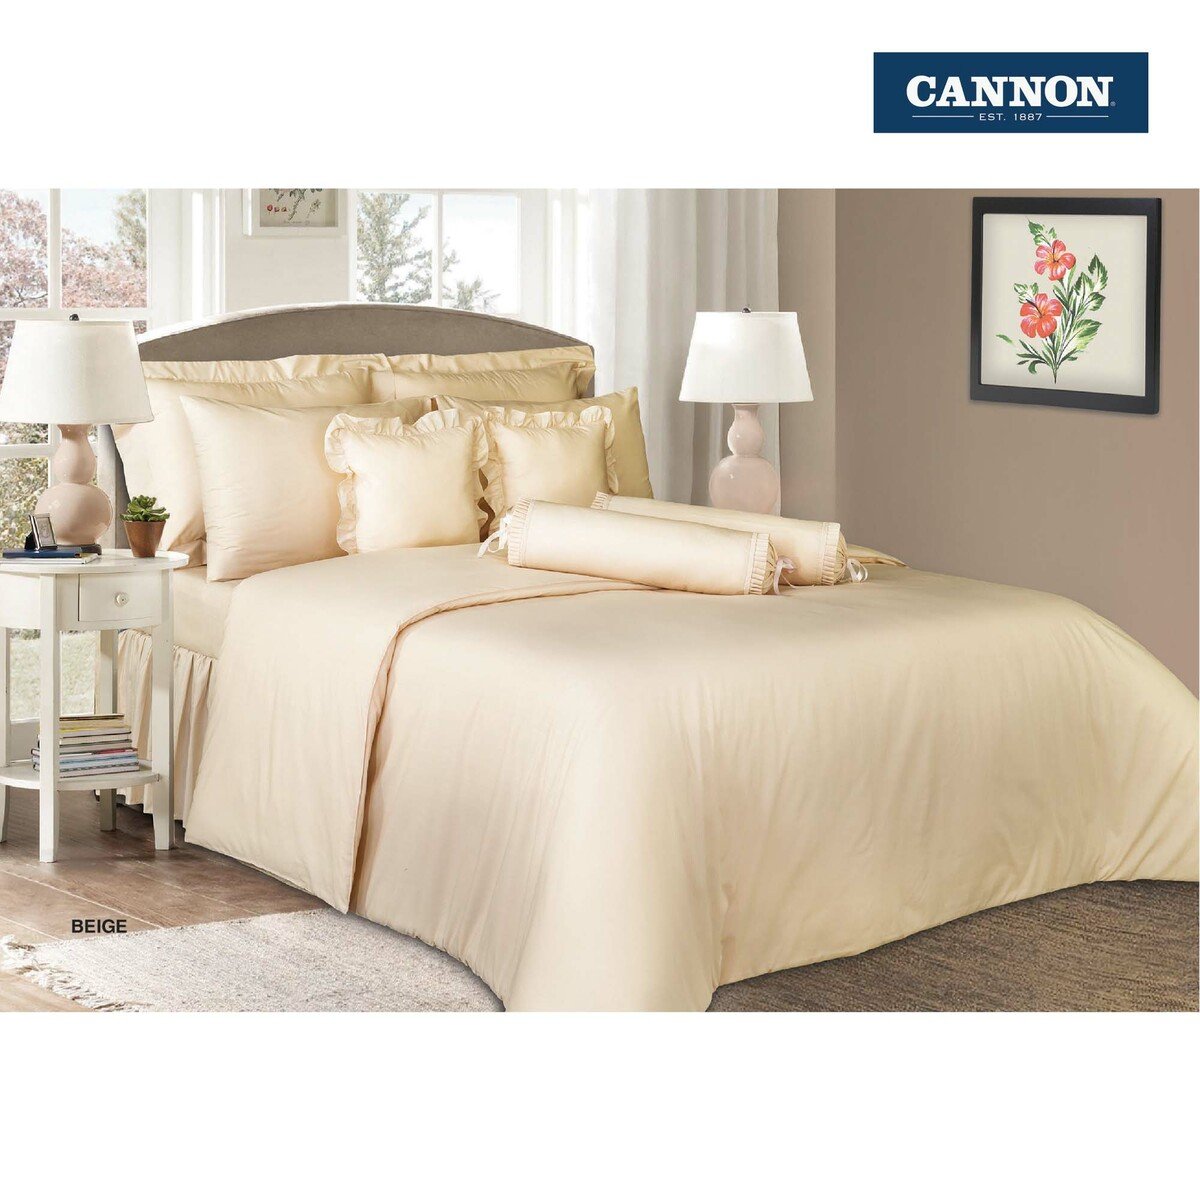 Canon Cannon Bed Sheet + Pillow Cover Plain Single Size 168x244cm Beige